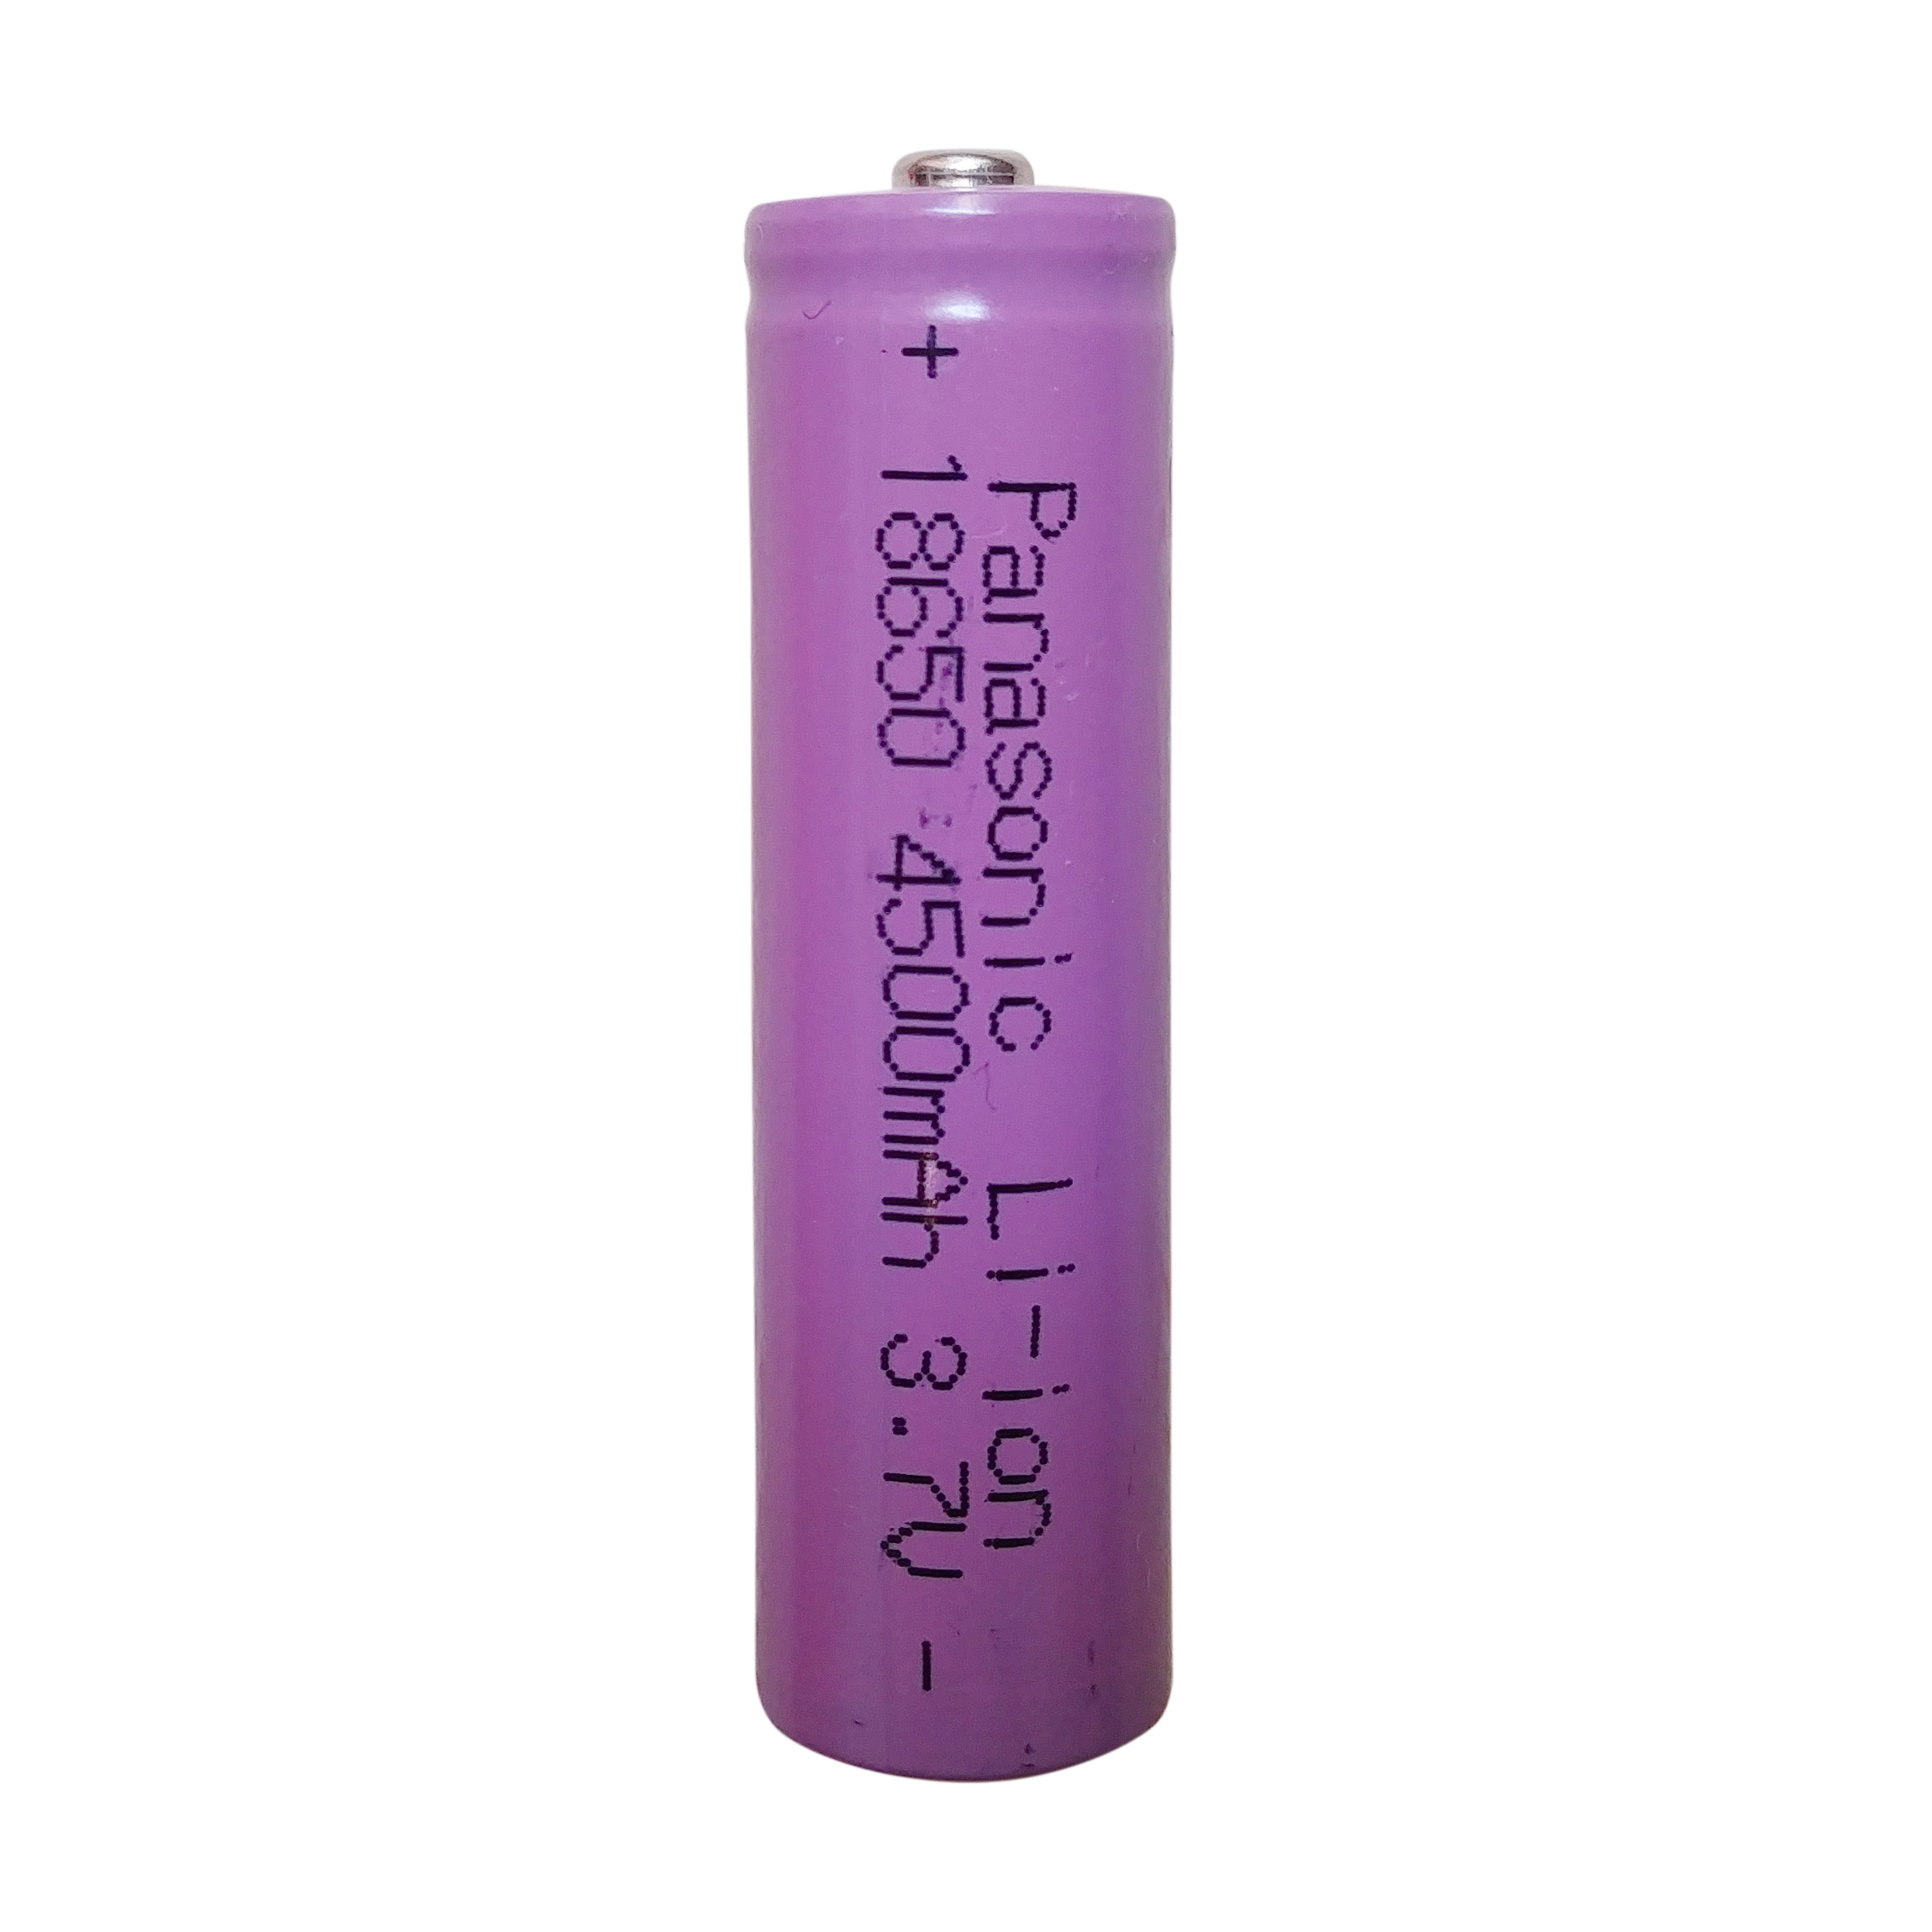 باتری لیتیوم-یون قابل شارژ پاناسونیک کد 18650 ظرفیت 4500 میلی آمپرساعت